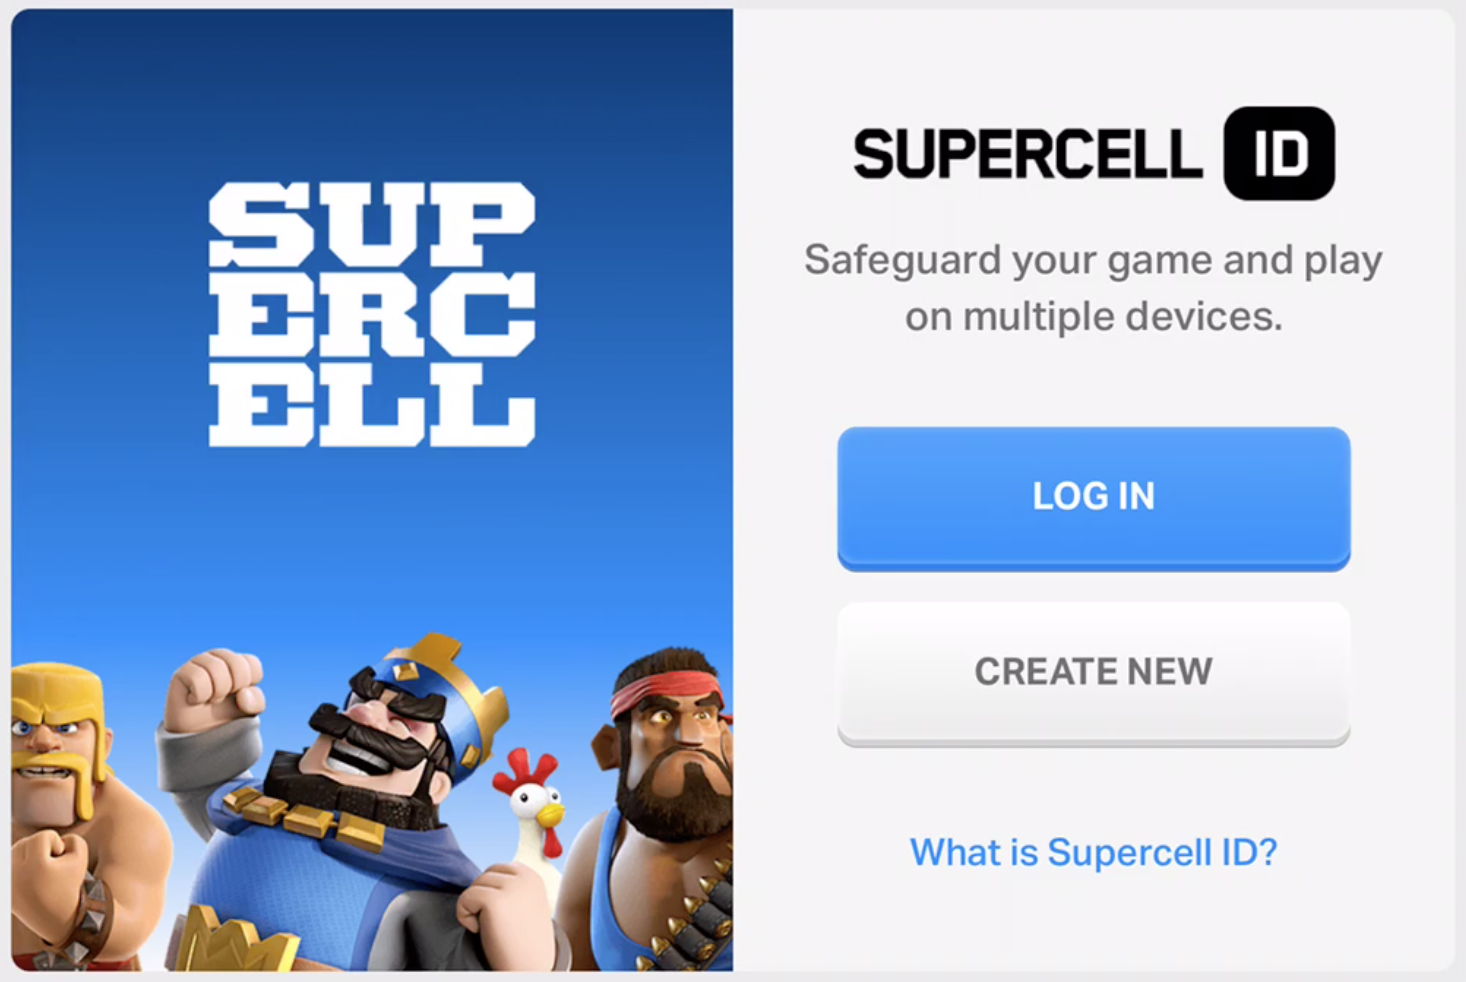 Не приходит код суперселл бравл старс. Суперселл ID. Картинки Supercell. Игры Supercell ID. Значок Supercell ID.